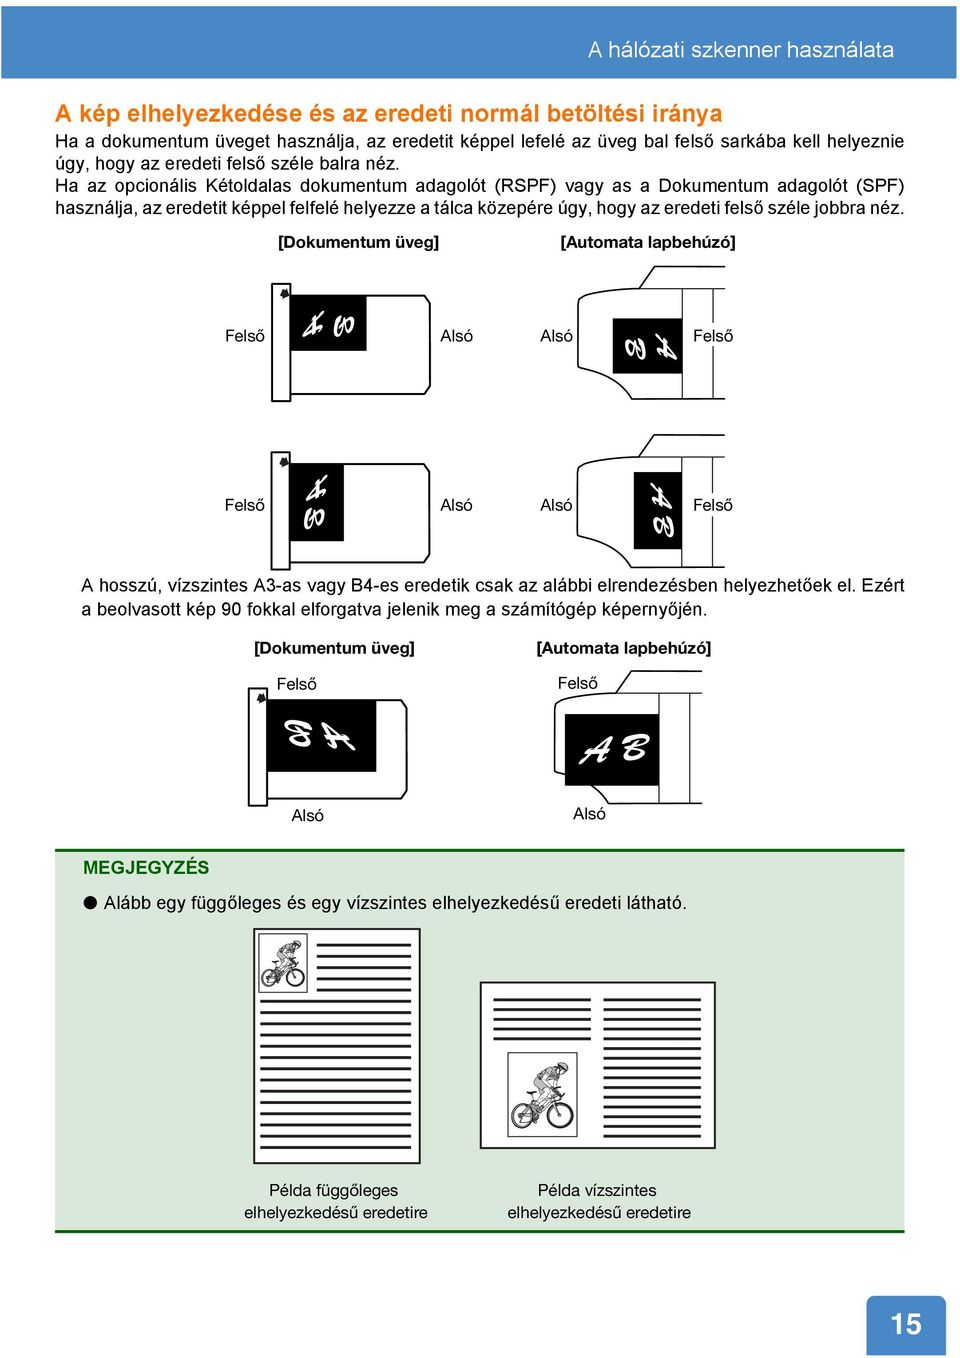 Ha az opcionális Kétoldalas dokumentum adagolót (RSPF) vagy as a Dokumentum adagolót (SPF) használja, az eredetit képpel felfelé helyezze a tálca közepére úgy, hogy az eredeti felső széle jobbra néz.